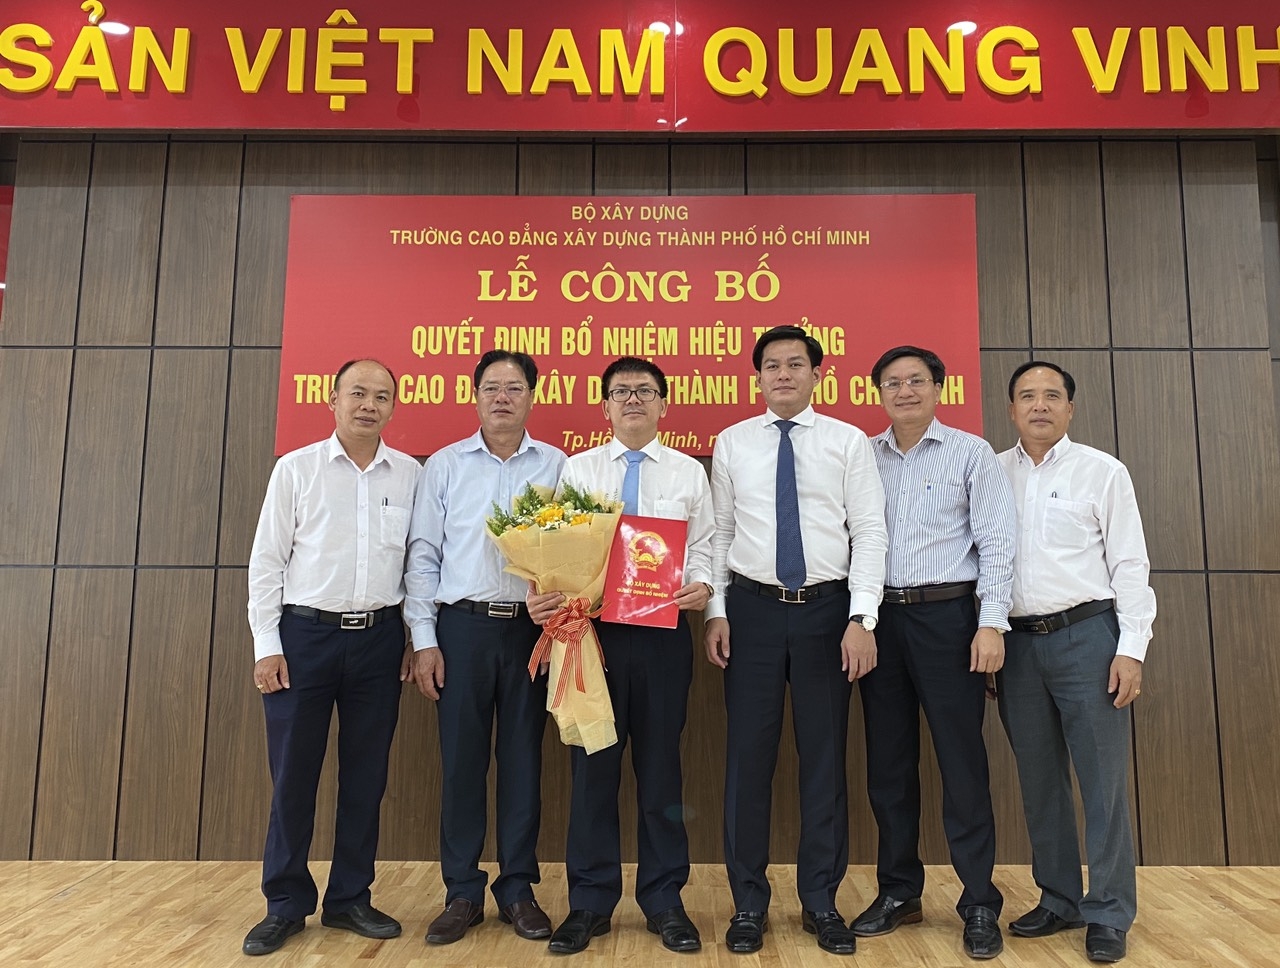 Công bố Quyết định bổ nhiệm Hiệu trưởng Trường Cao đẳng Xây dựng Thành phố Hồ Chí Minh